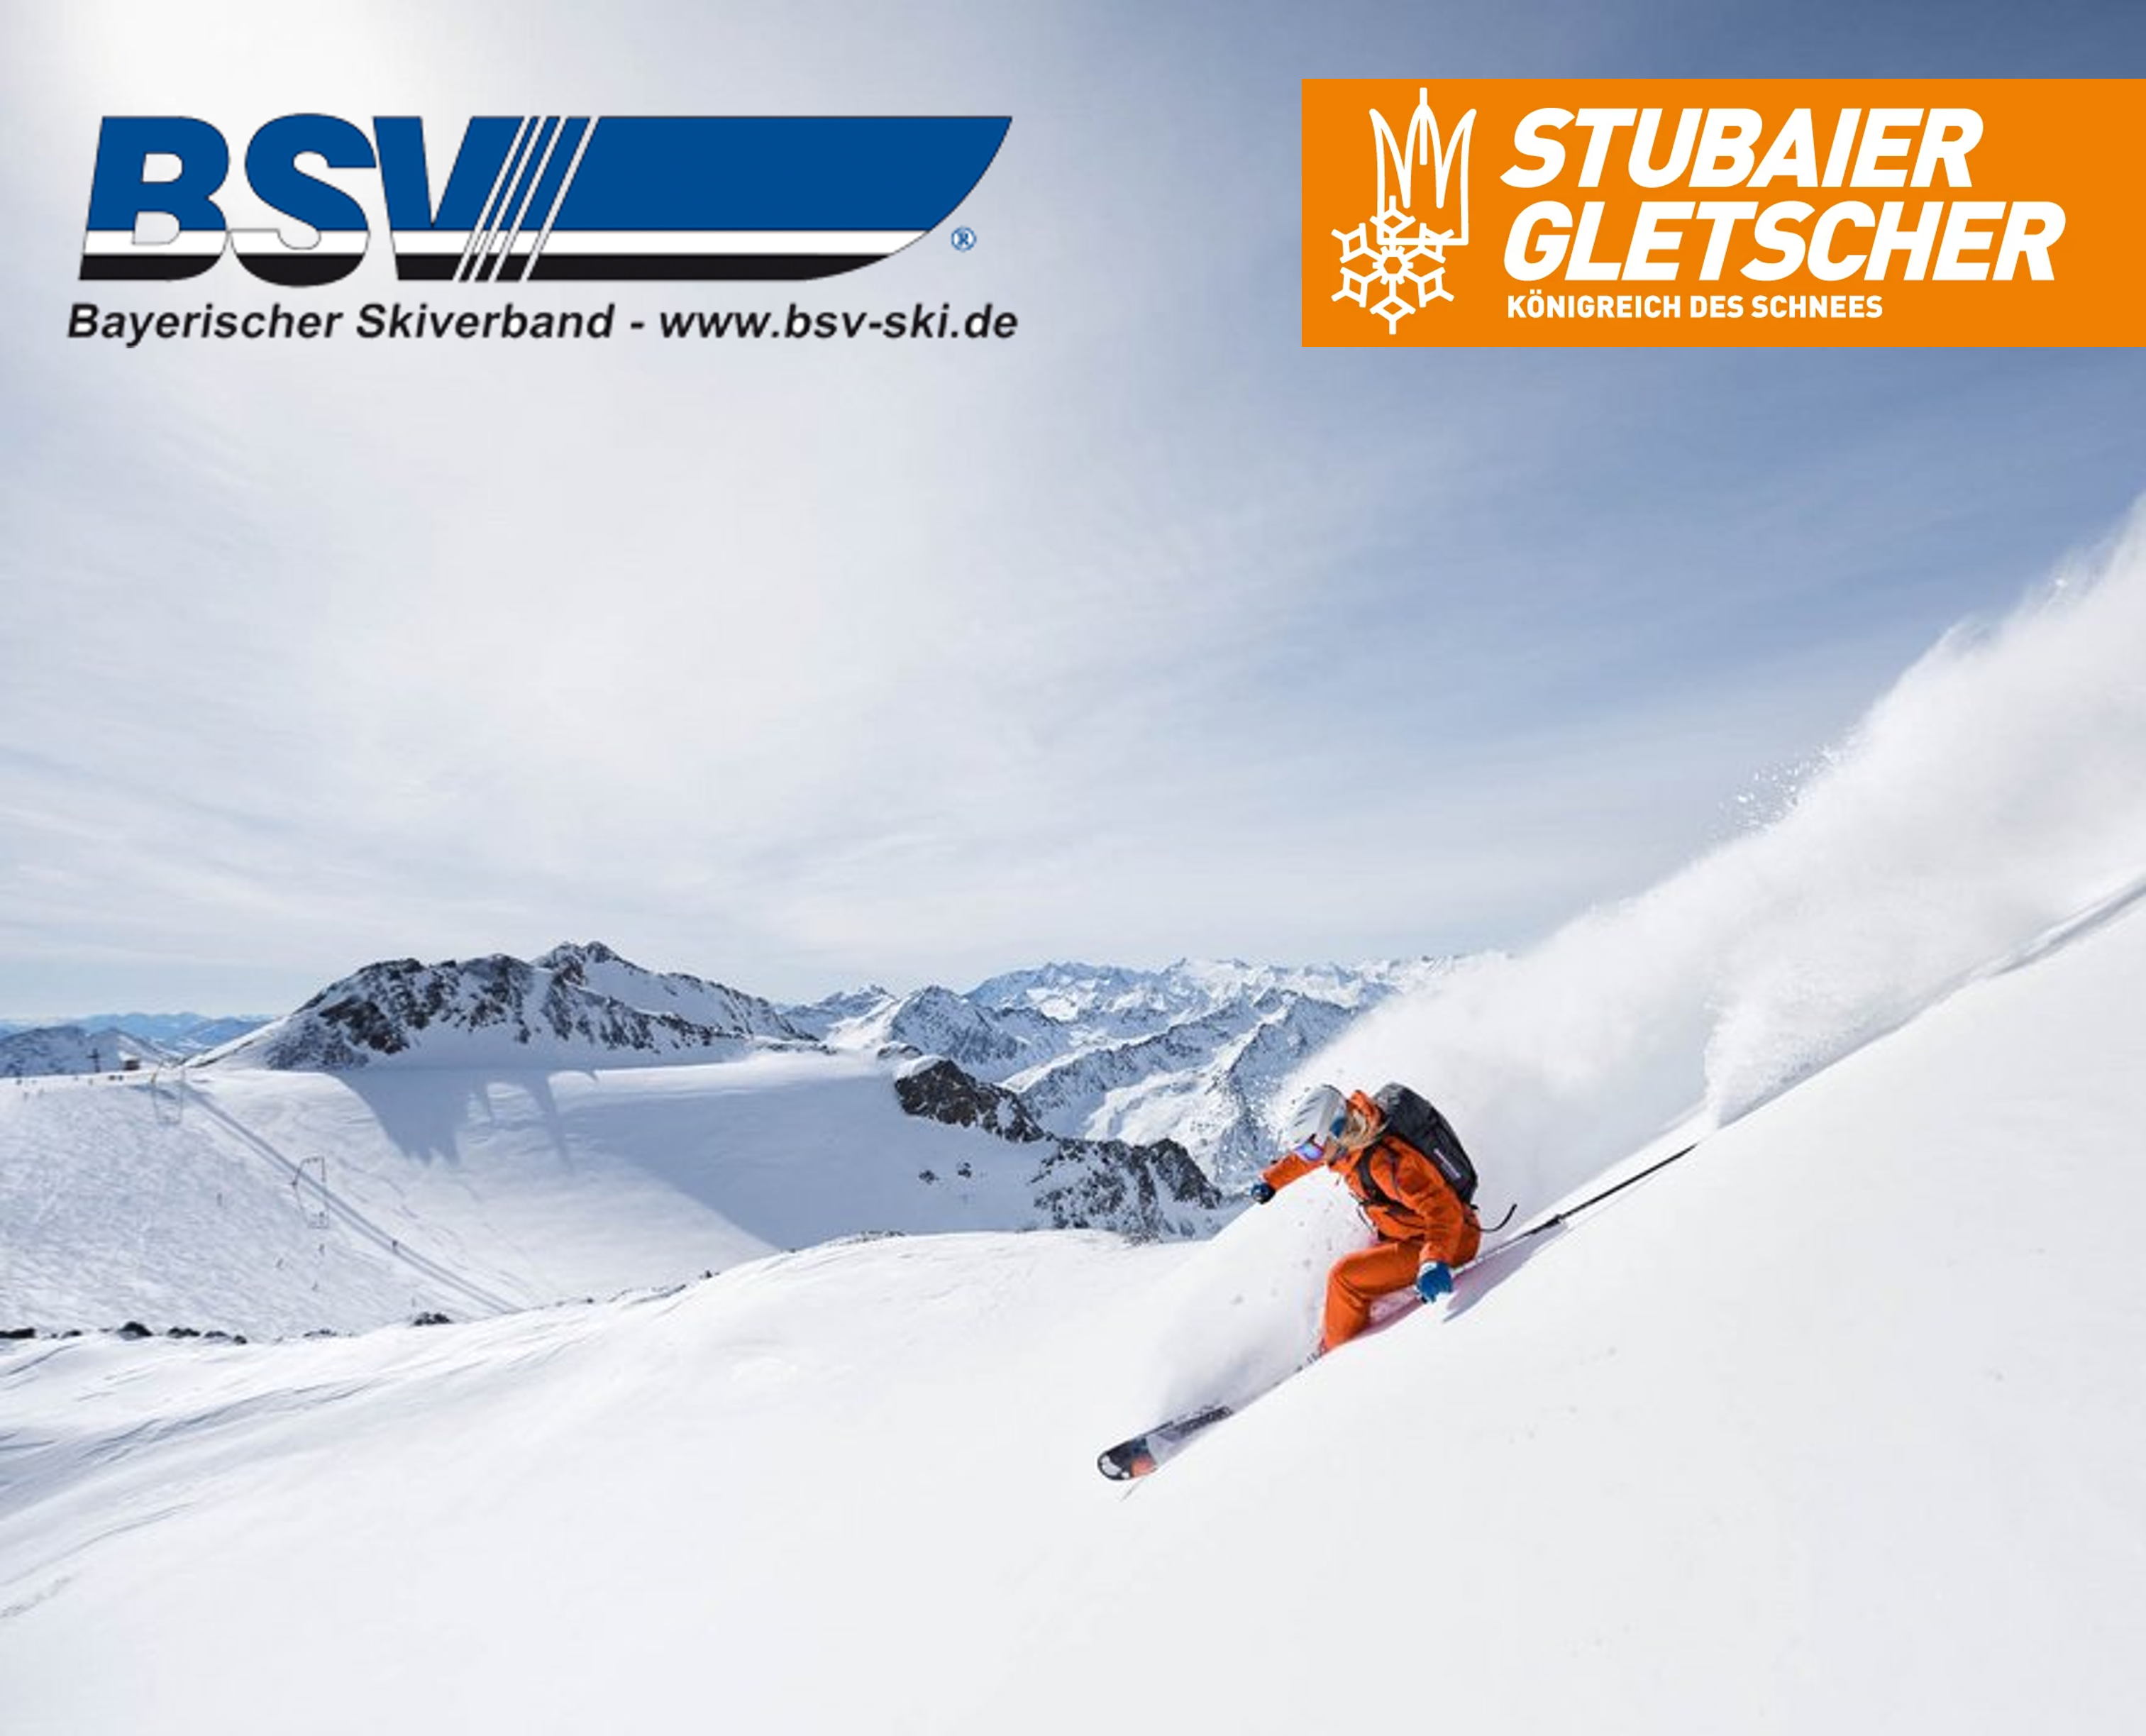 Stubaier Gletscher und BSV verlängern Partnerschaft bis zum 31.12.2025